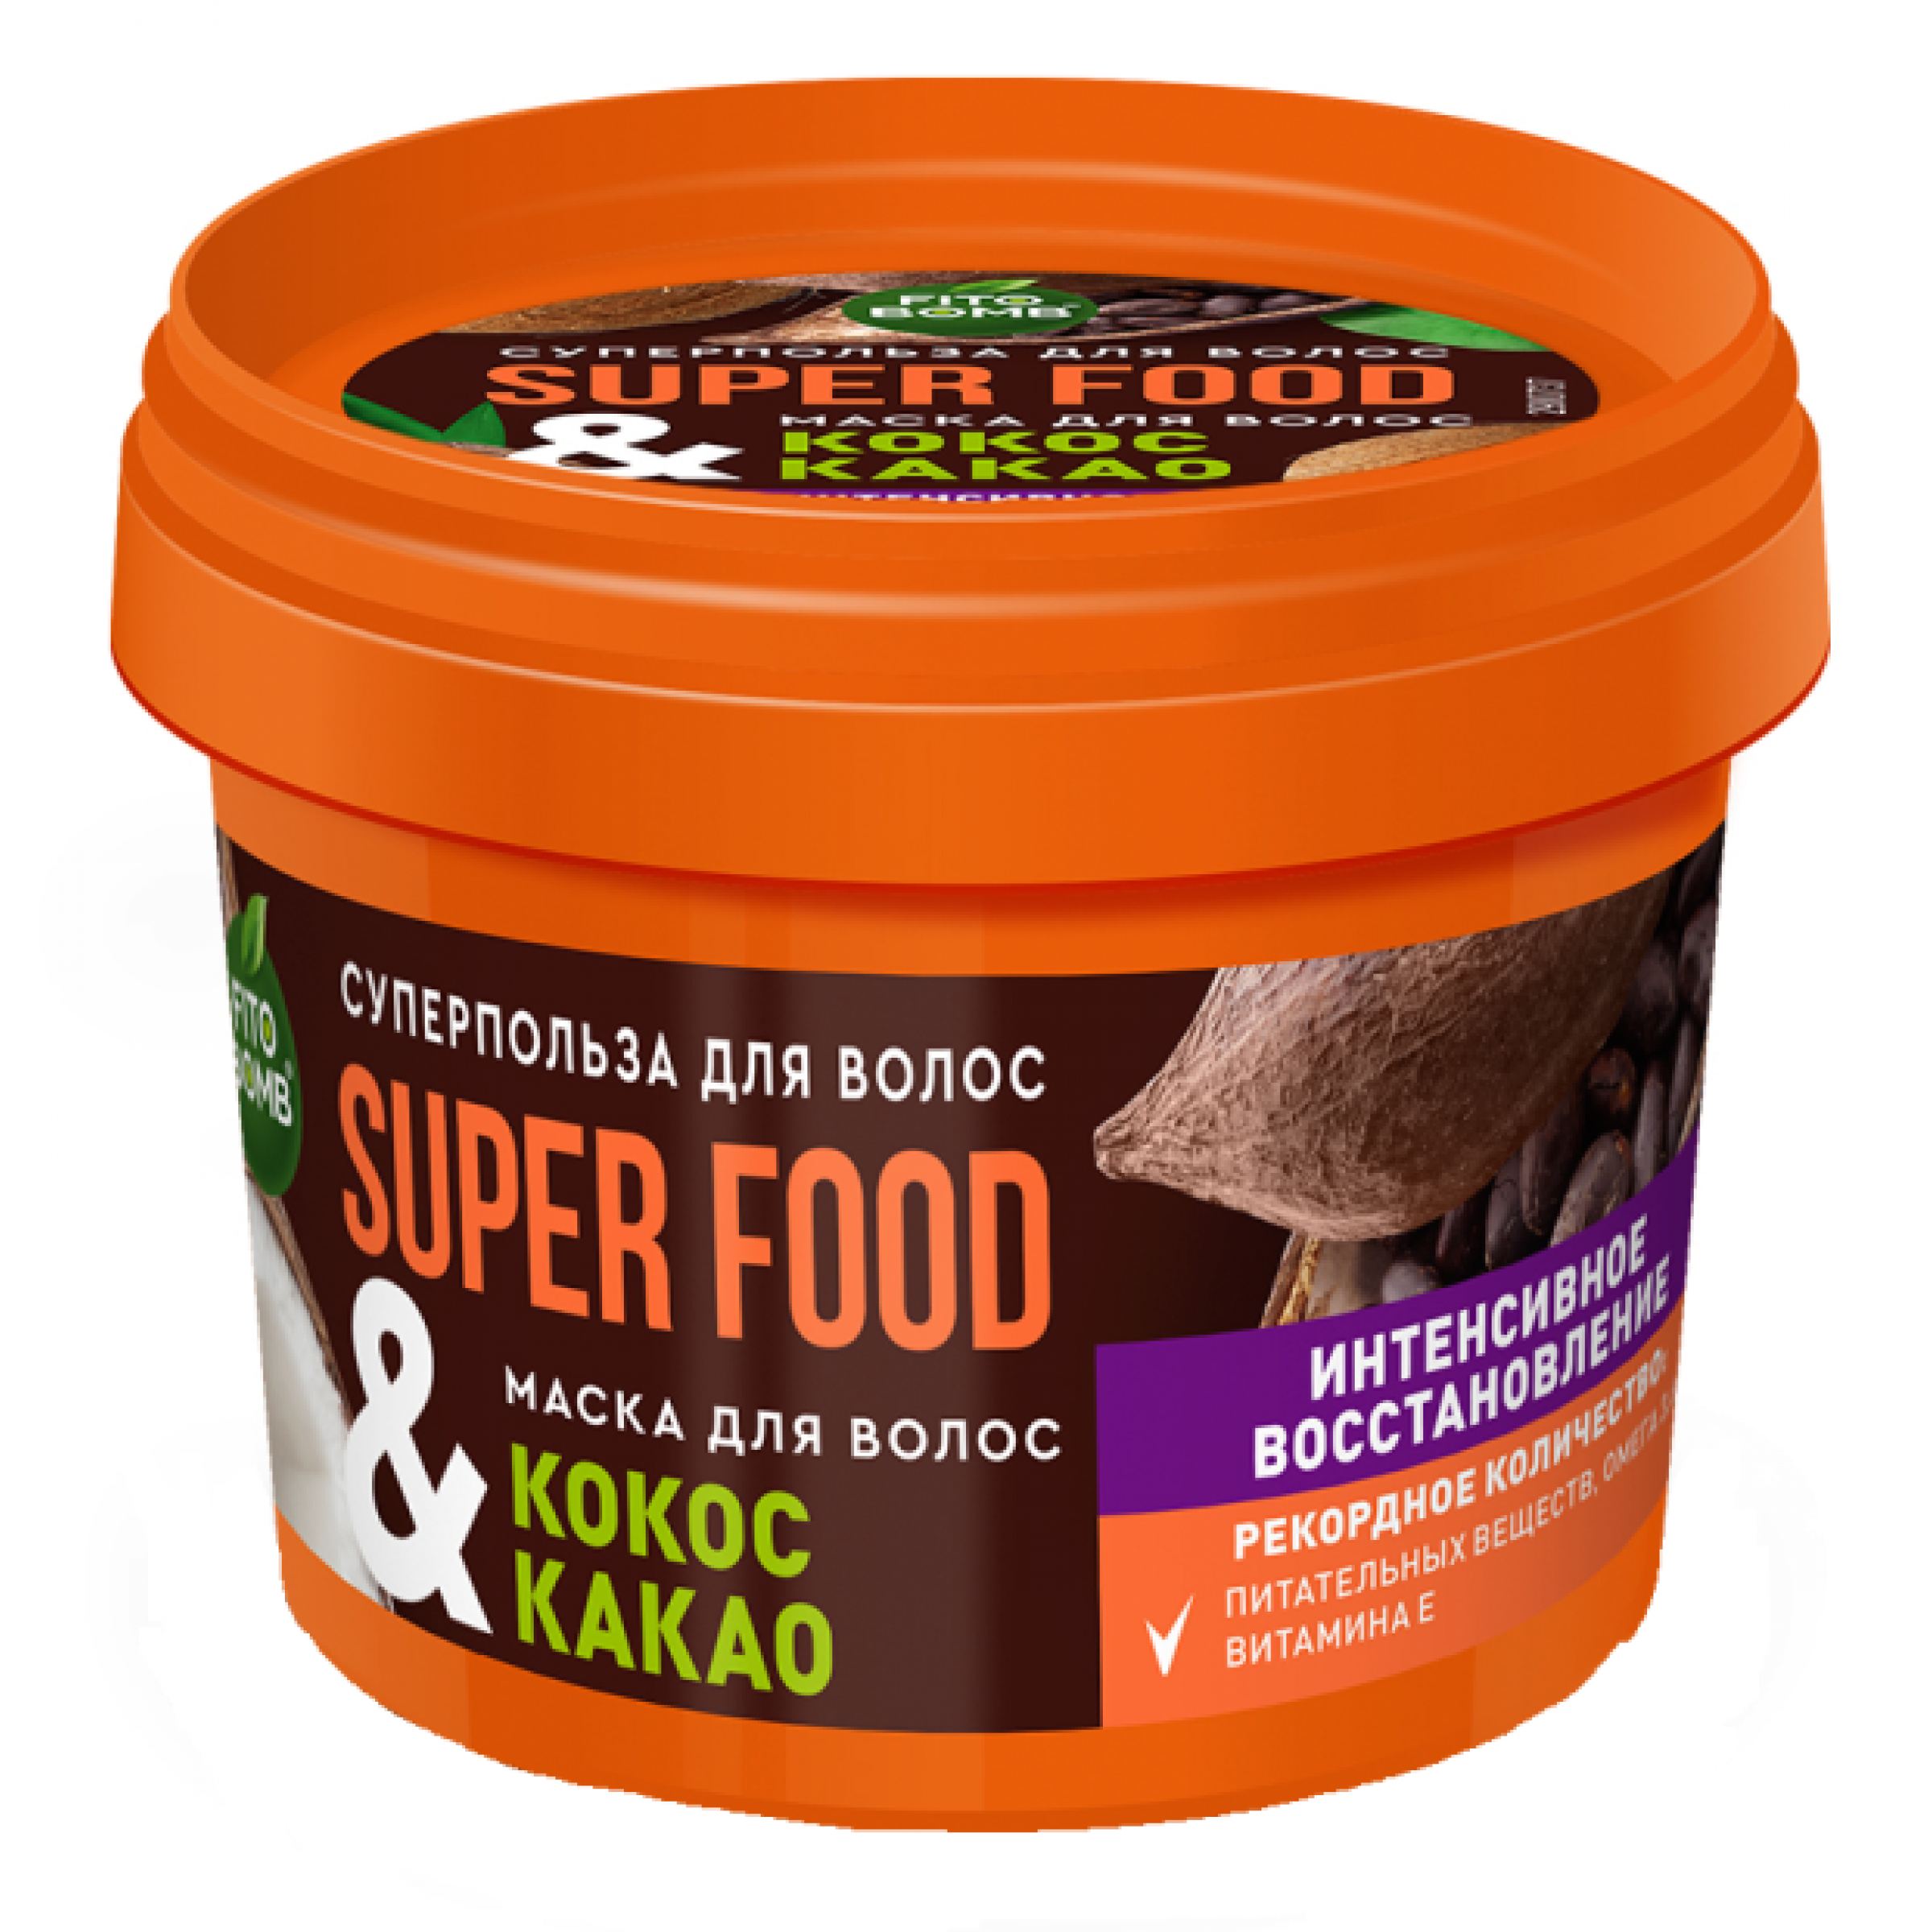 Маска для волос Super food Кокос и какао Фитокосметик, 100 мл